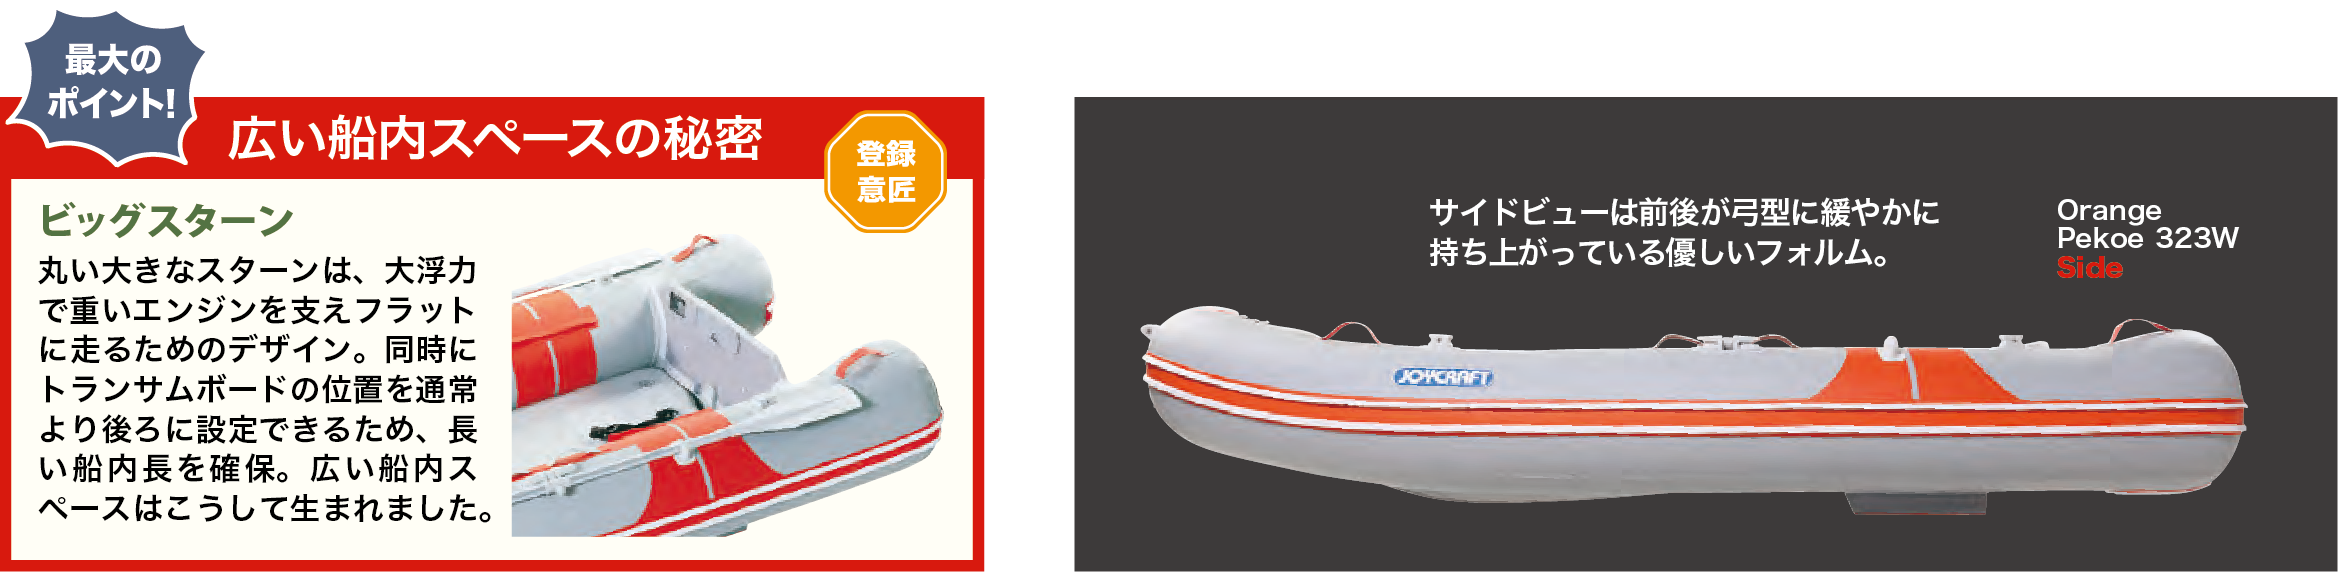 オレンジペコ323ワイド SS | ジョイクラフト ゴムボートの販売と 